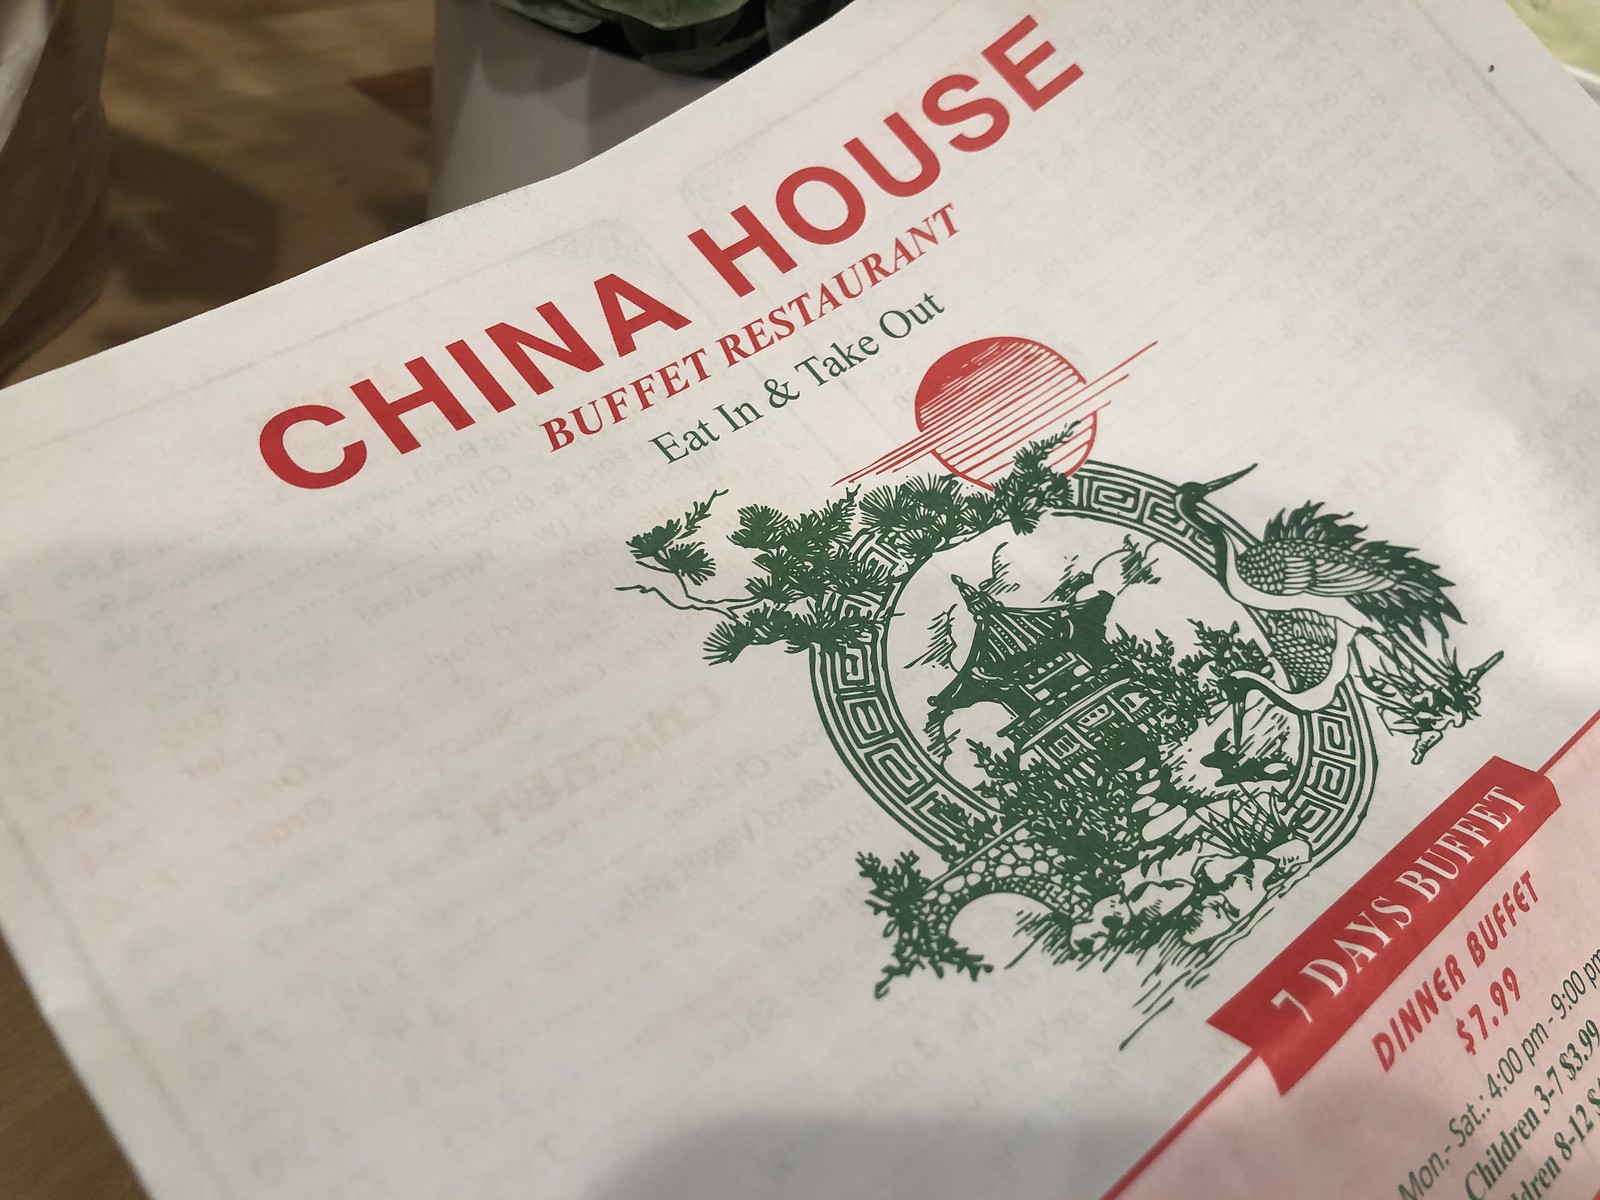 China House - Huntington